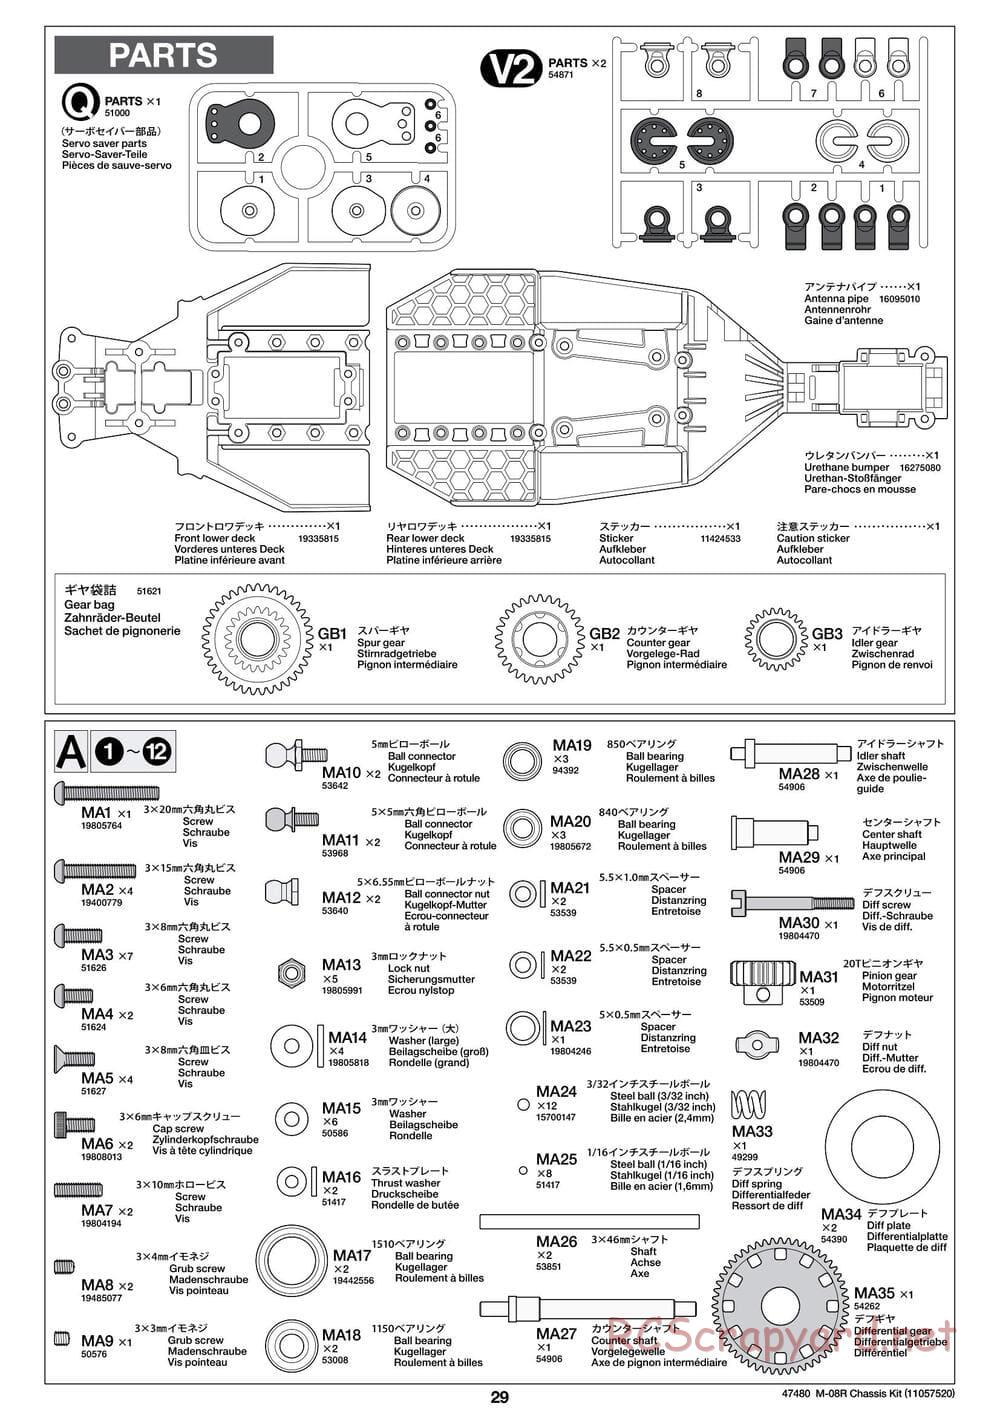 Tamiya - M-08R Chassis - Manual - Page 29